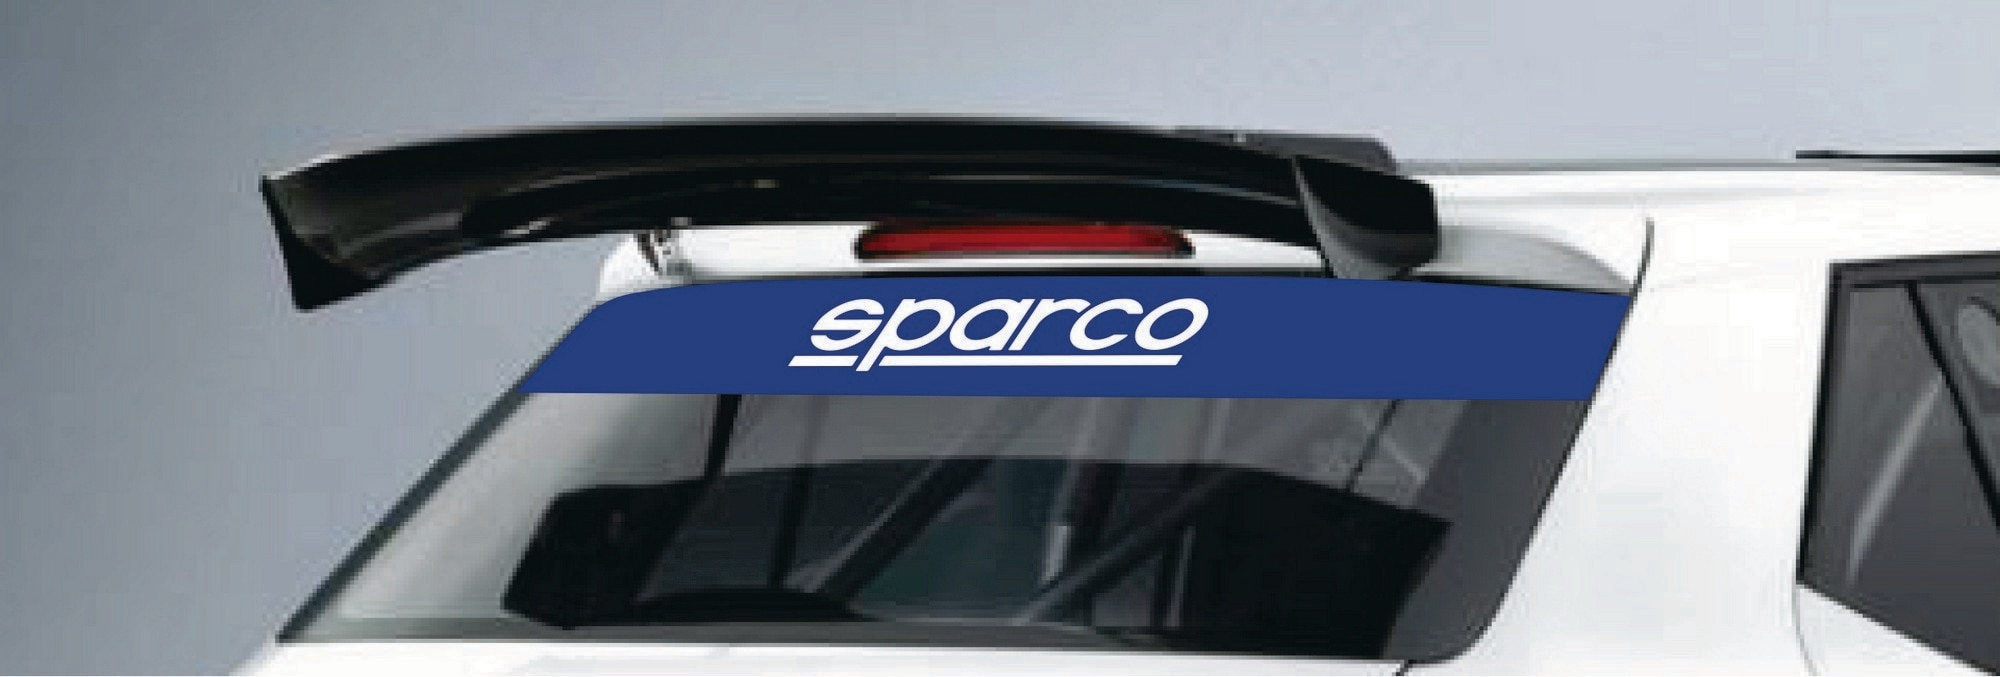 Rear window sticker Sparco